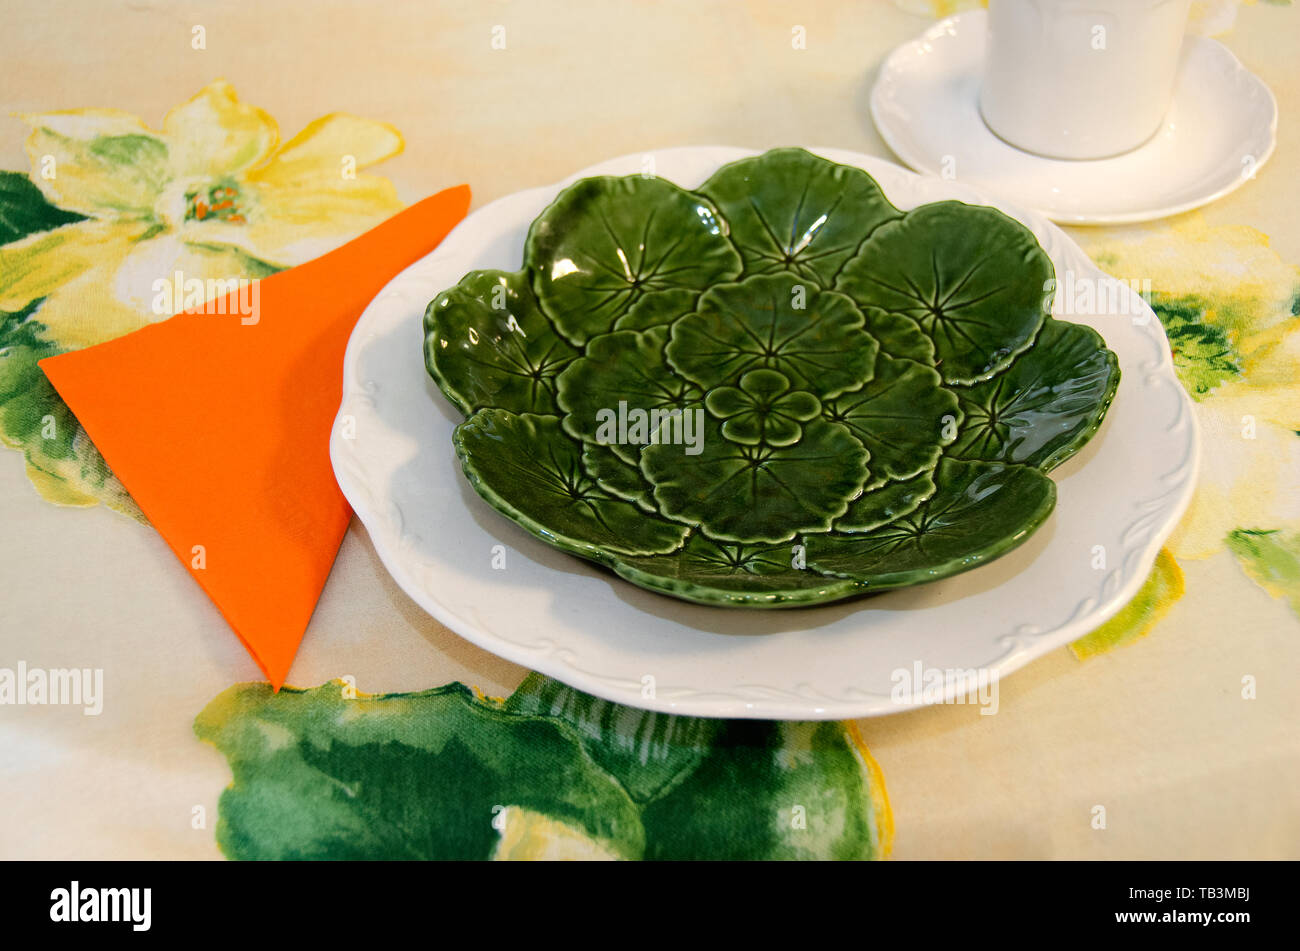 Helle farbige Tabelle Einstellung mit grünem Salatteller und orange Serviette auf blumige Tischdecke Stockfoto